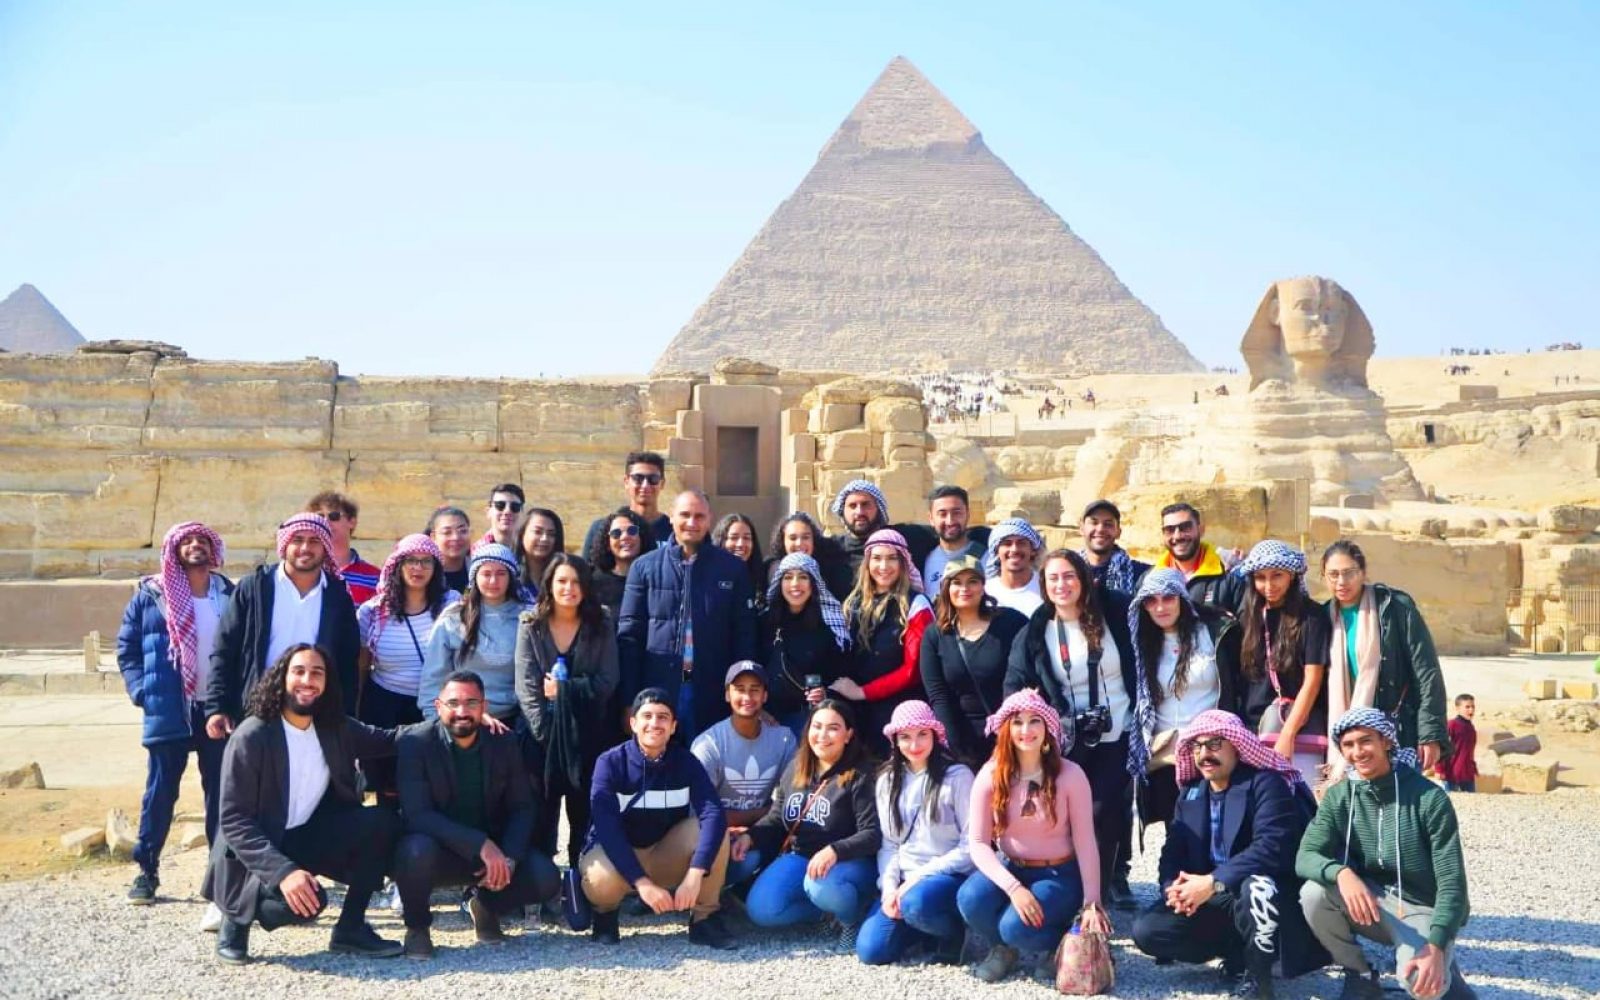 الحكومة المصرية تصدر بعض القرارات لعودة السياحة الوافدة الشهر المقبل